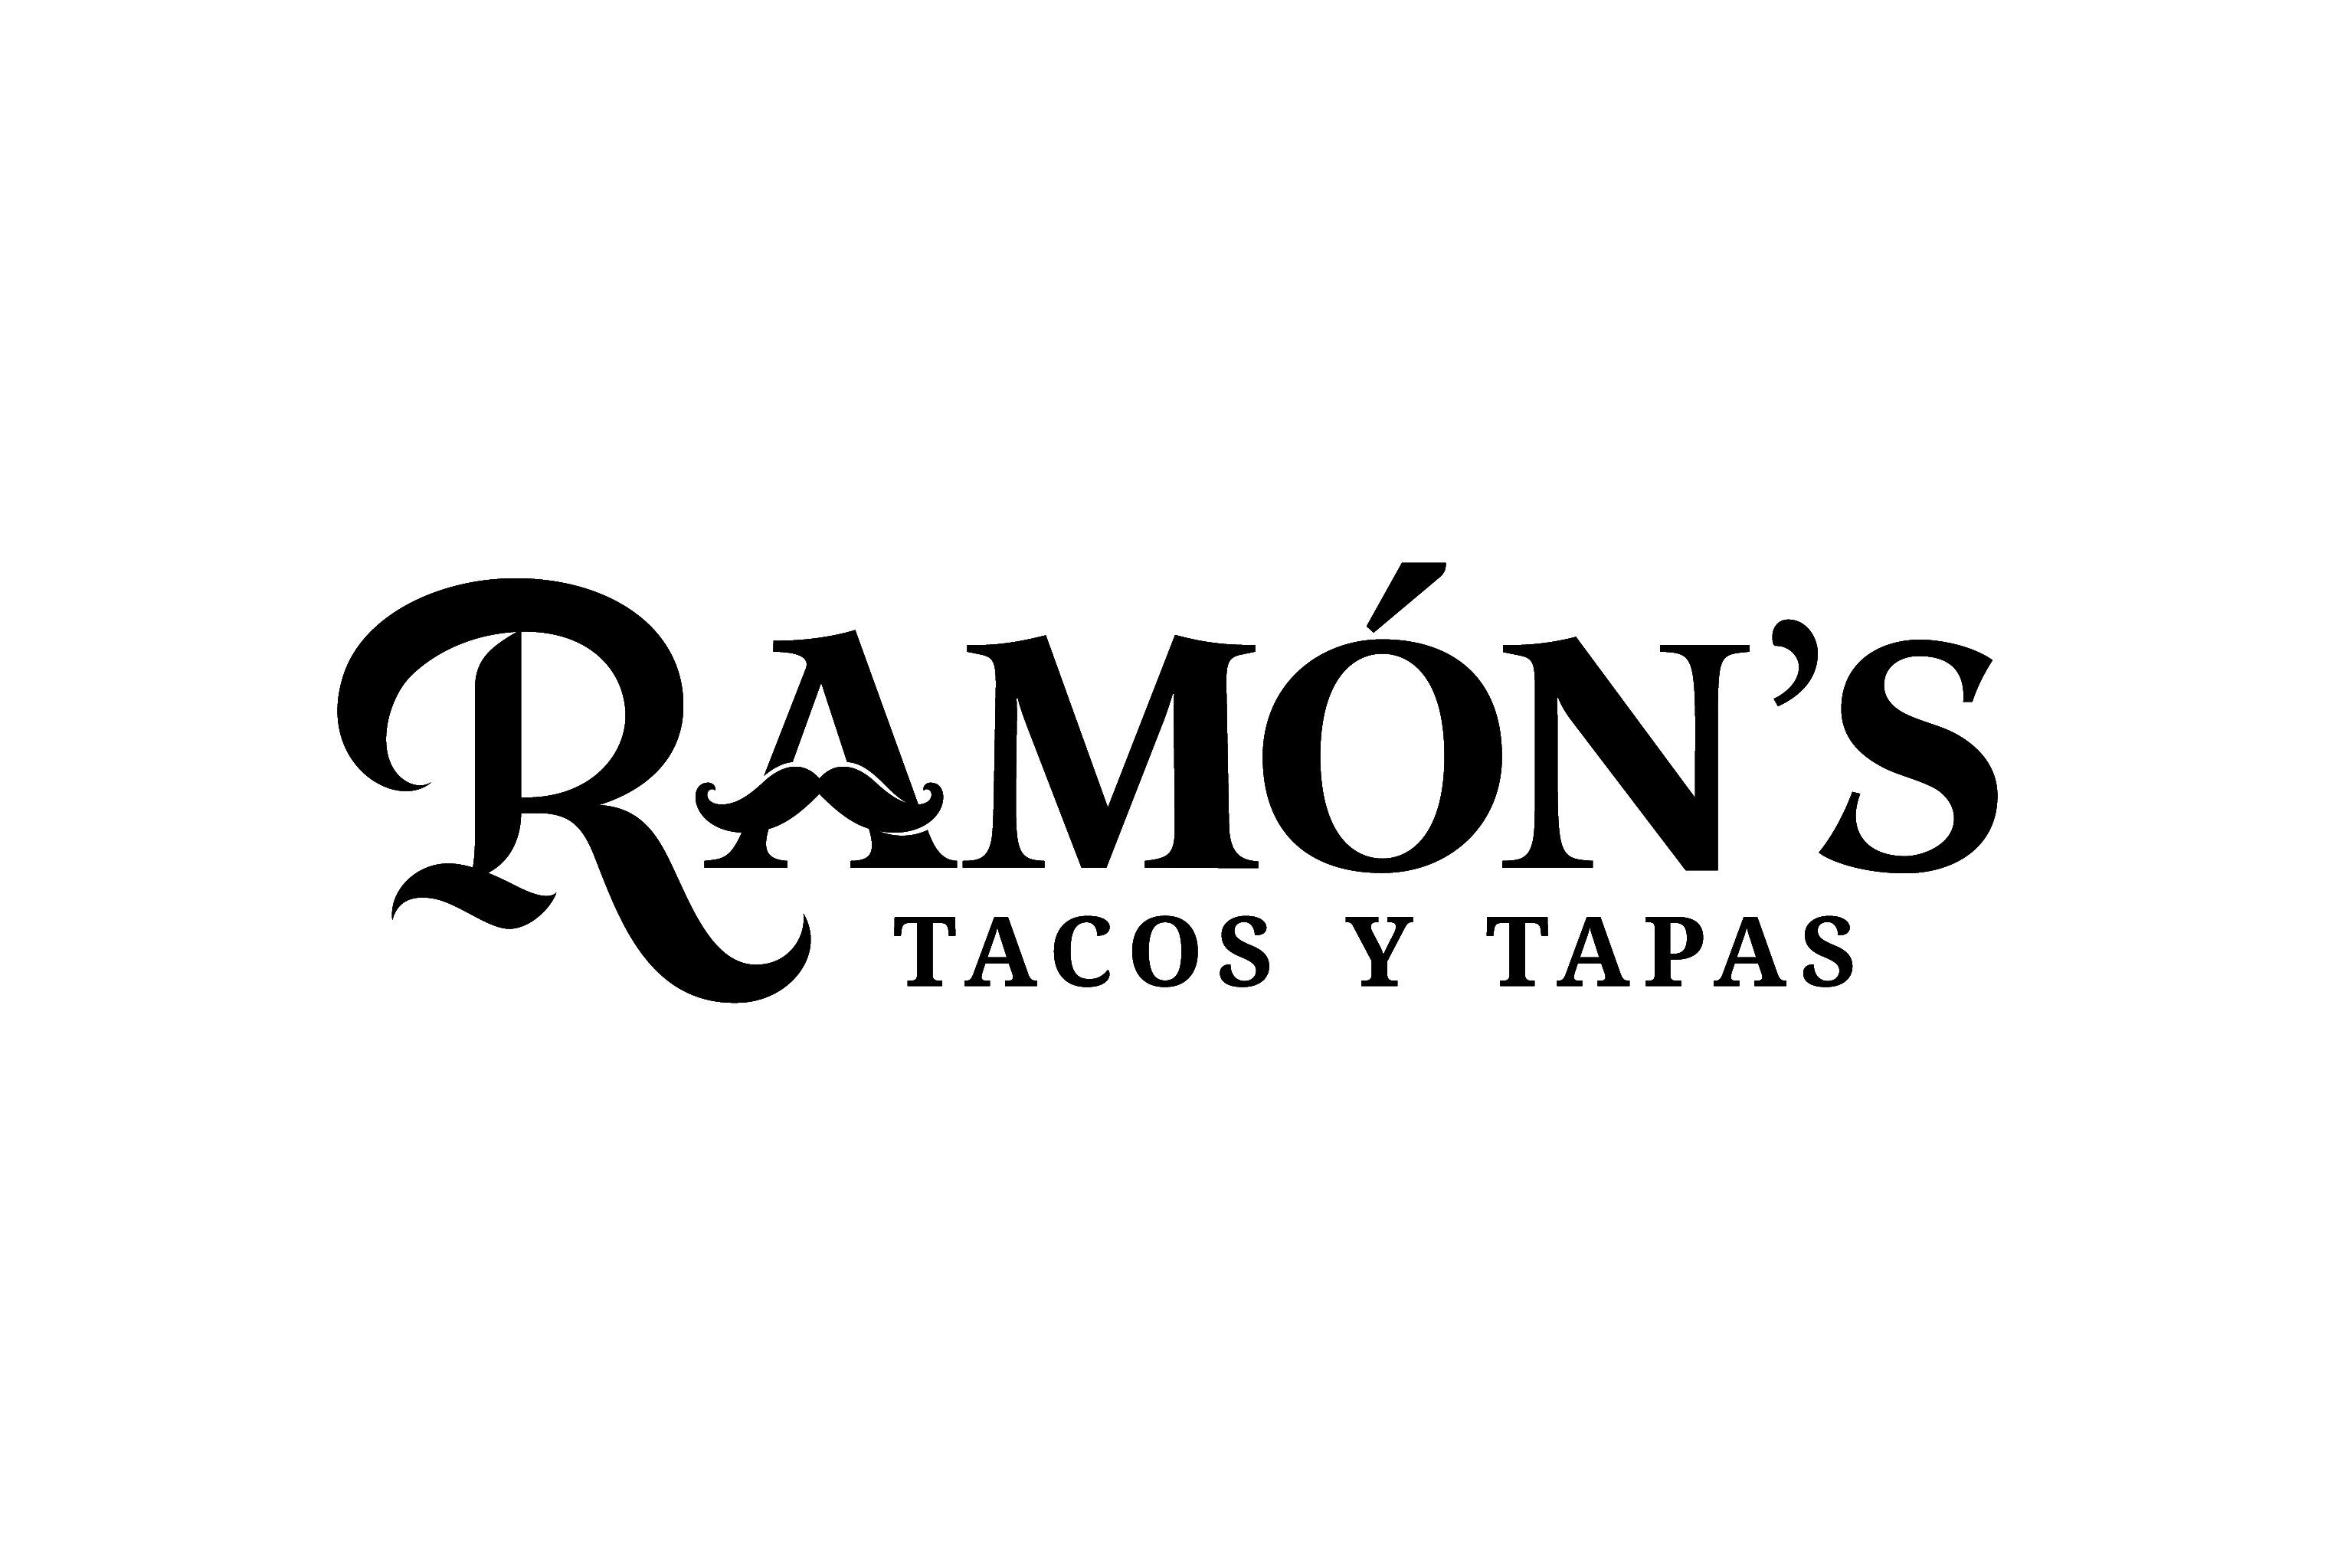 Ramon's Tacos y Tapas